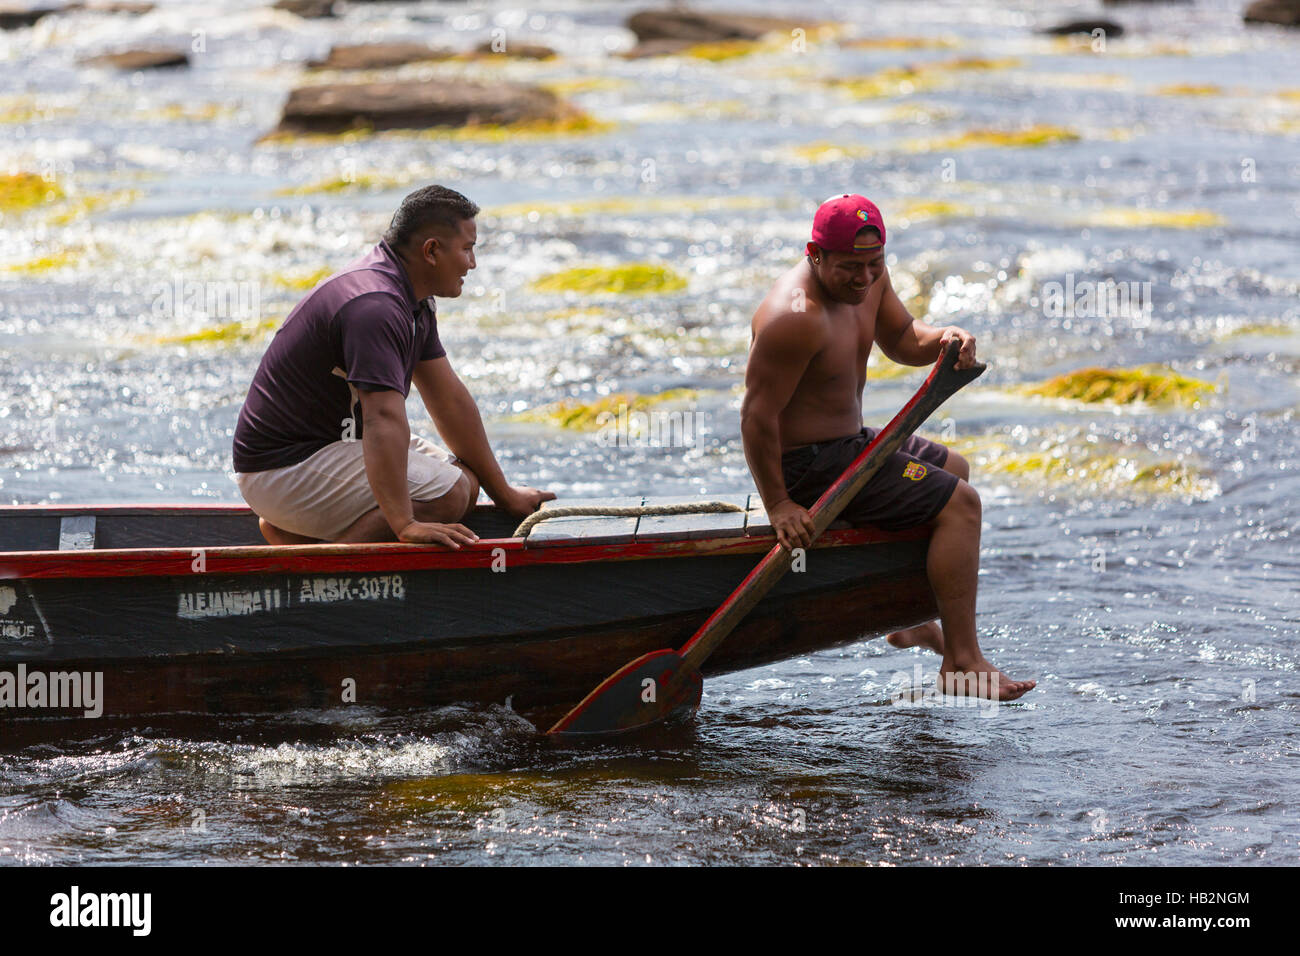 Indian Venezuelan guides at work on canoe, Canaima, Venezuela Stock Photo